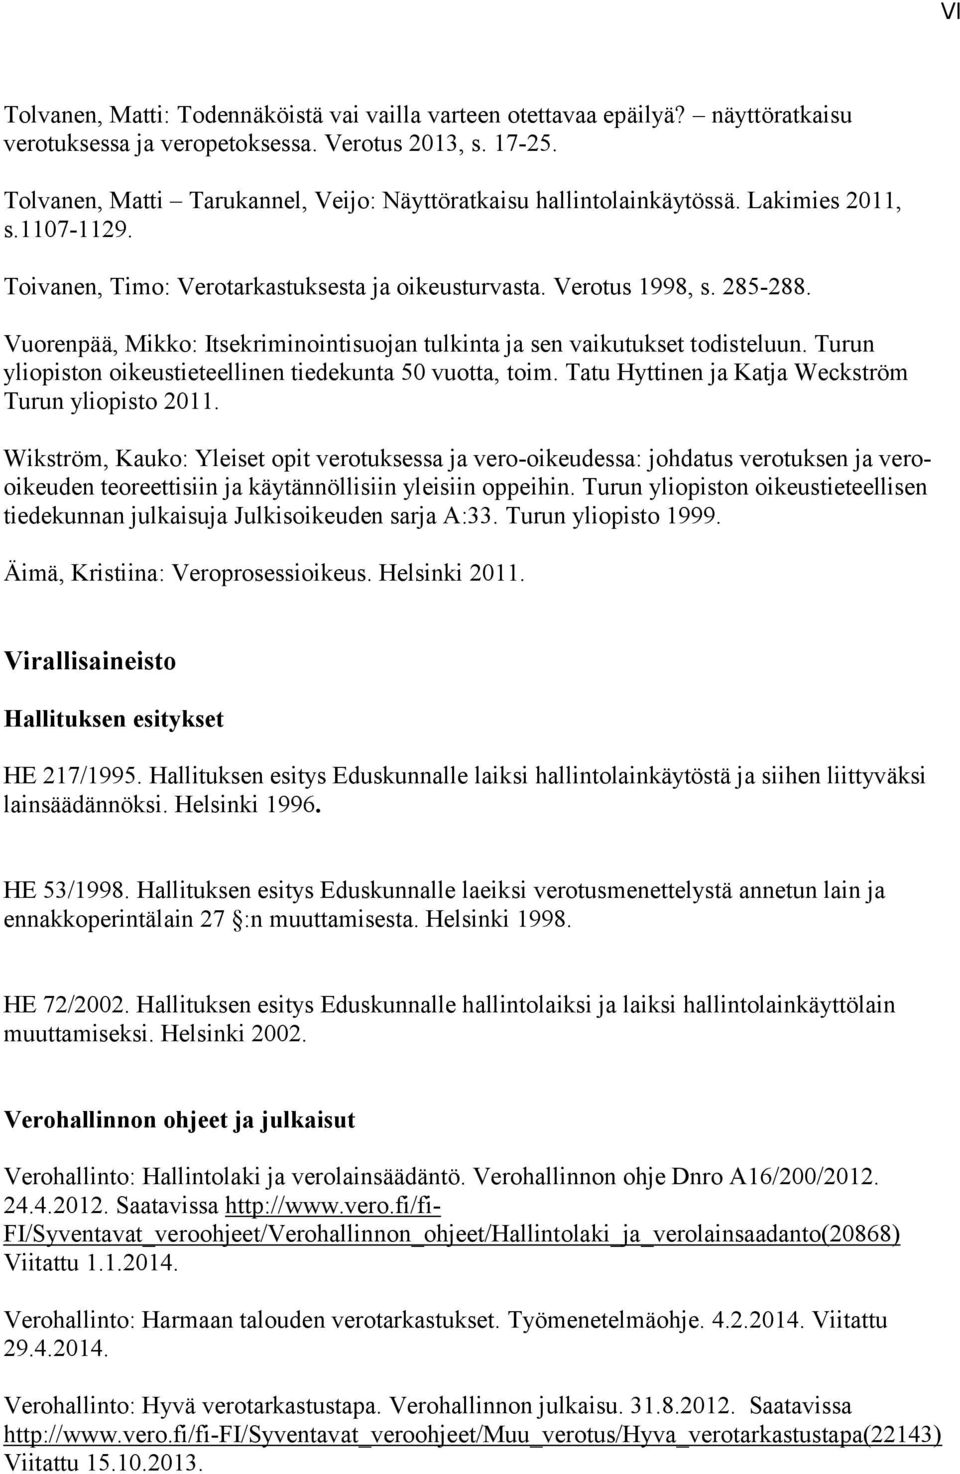 Vuorenpää, Mikko: Itsekriminointisuojan tulkinta ja sen vaikutukset todisteluun. Turun yliopiston oikeustieteellinen tiedekunta 50 vuotta, toim. Tatu Hyttinen ja Katja Weckström Turun yliopisto 2011.